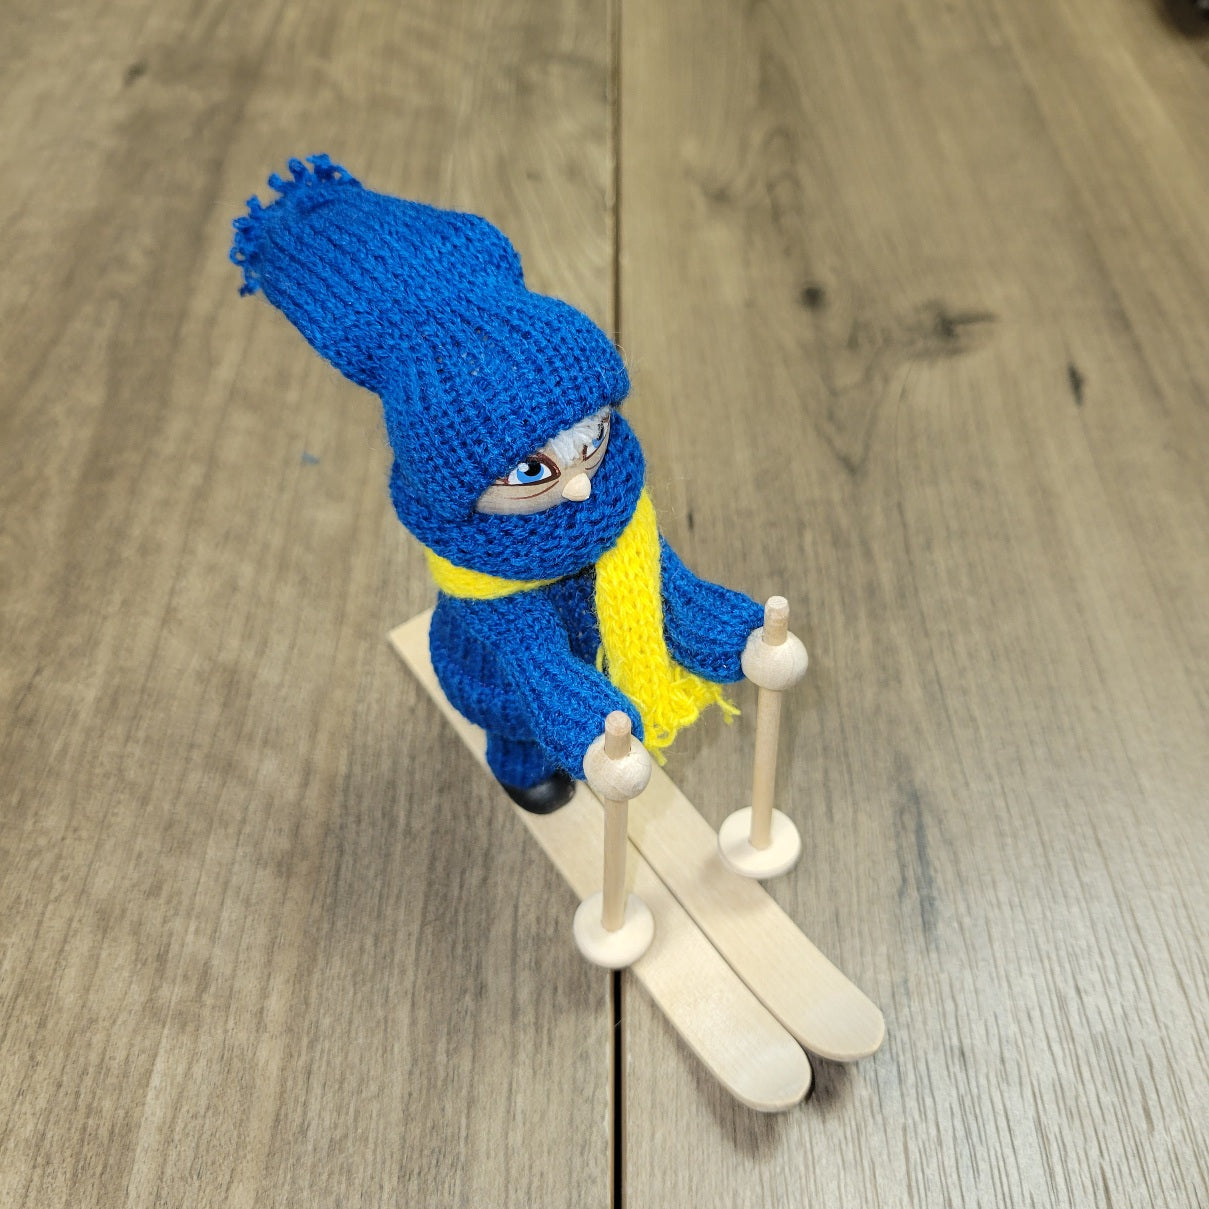 Figurine: Swedish Skier